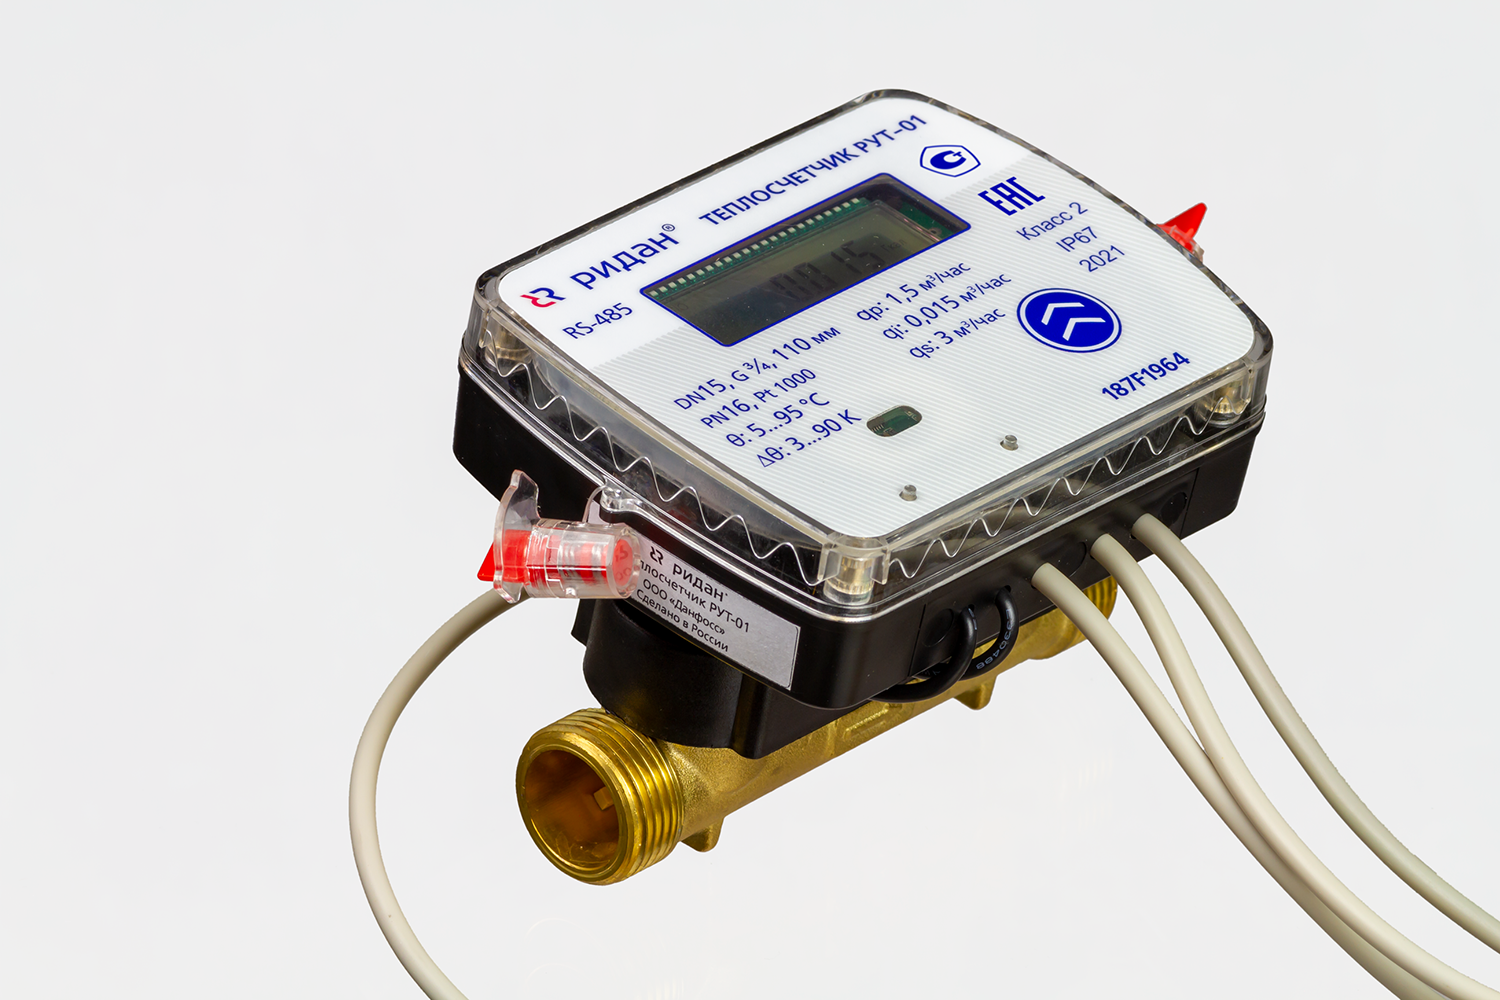 Теплосчетчик ультразвуковой РУТ-01 для учета в системах водяного отопления Ридан 187F1972PR